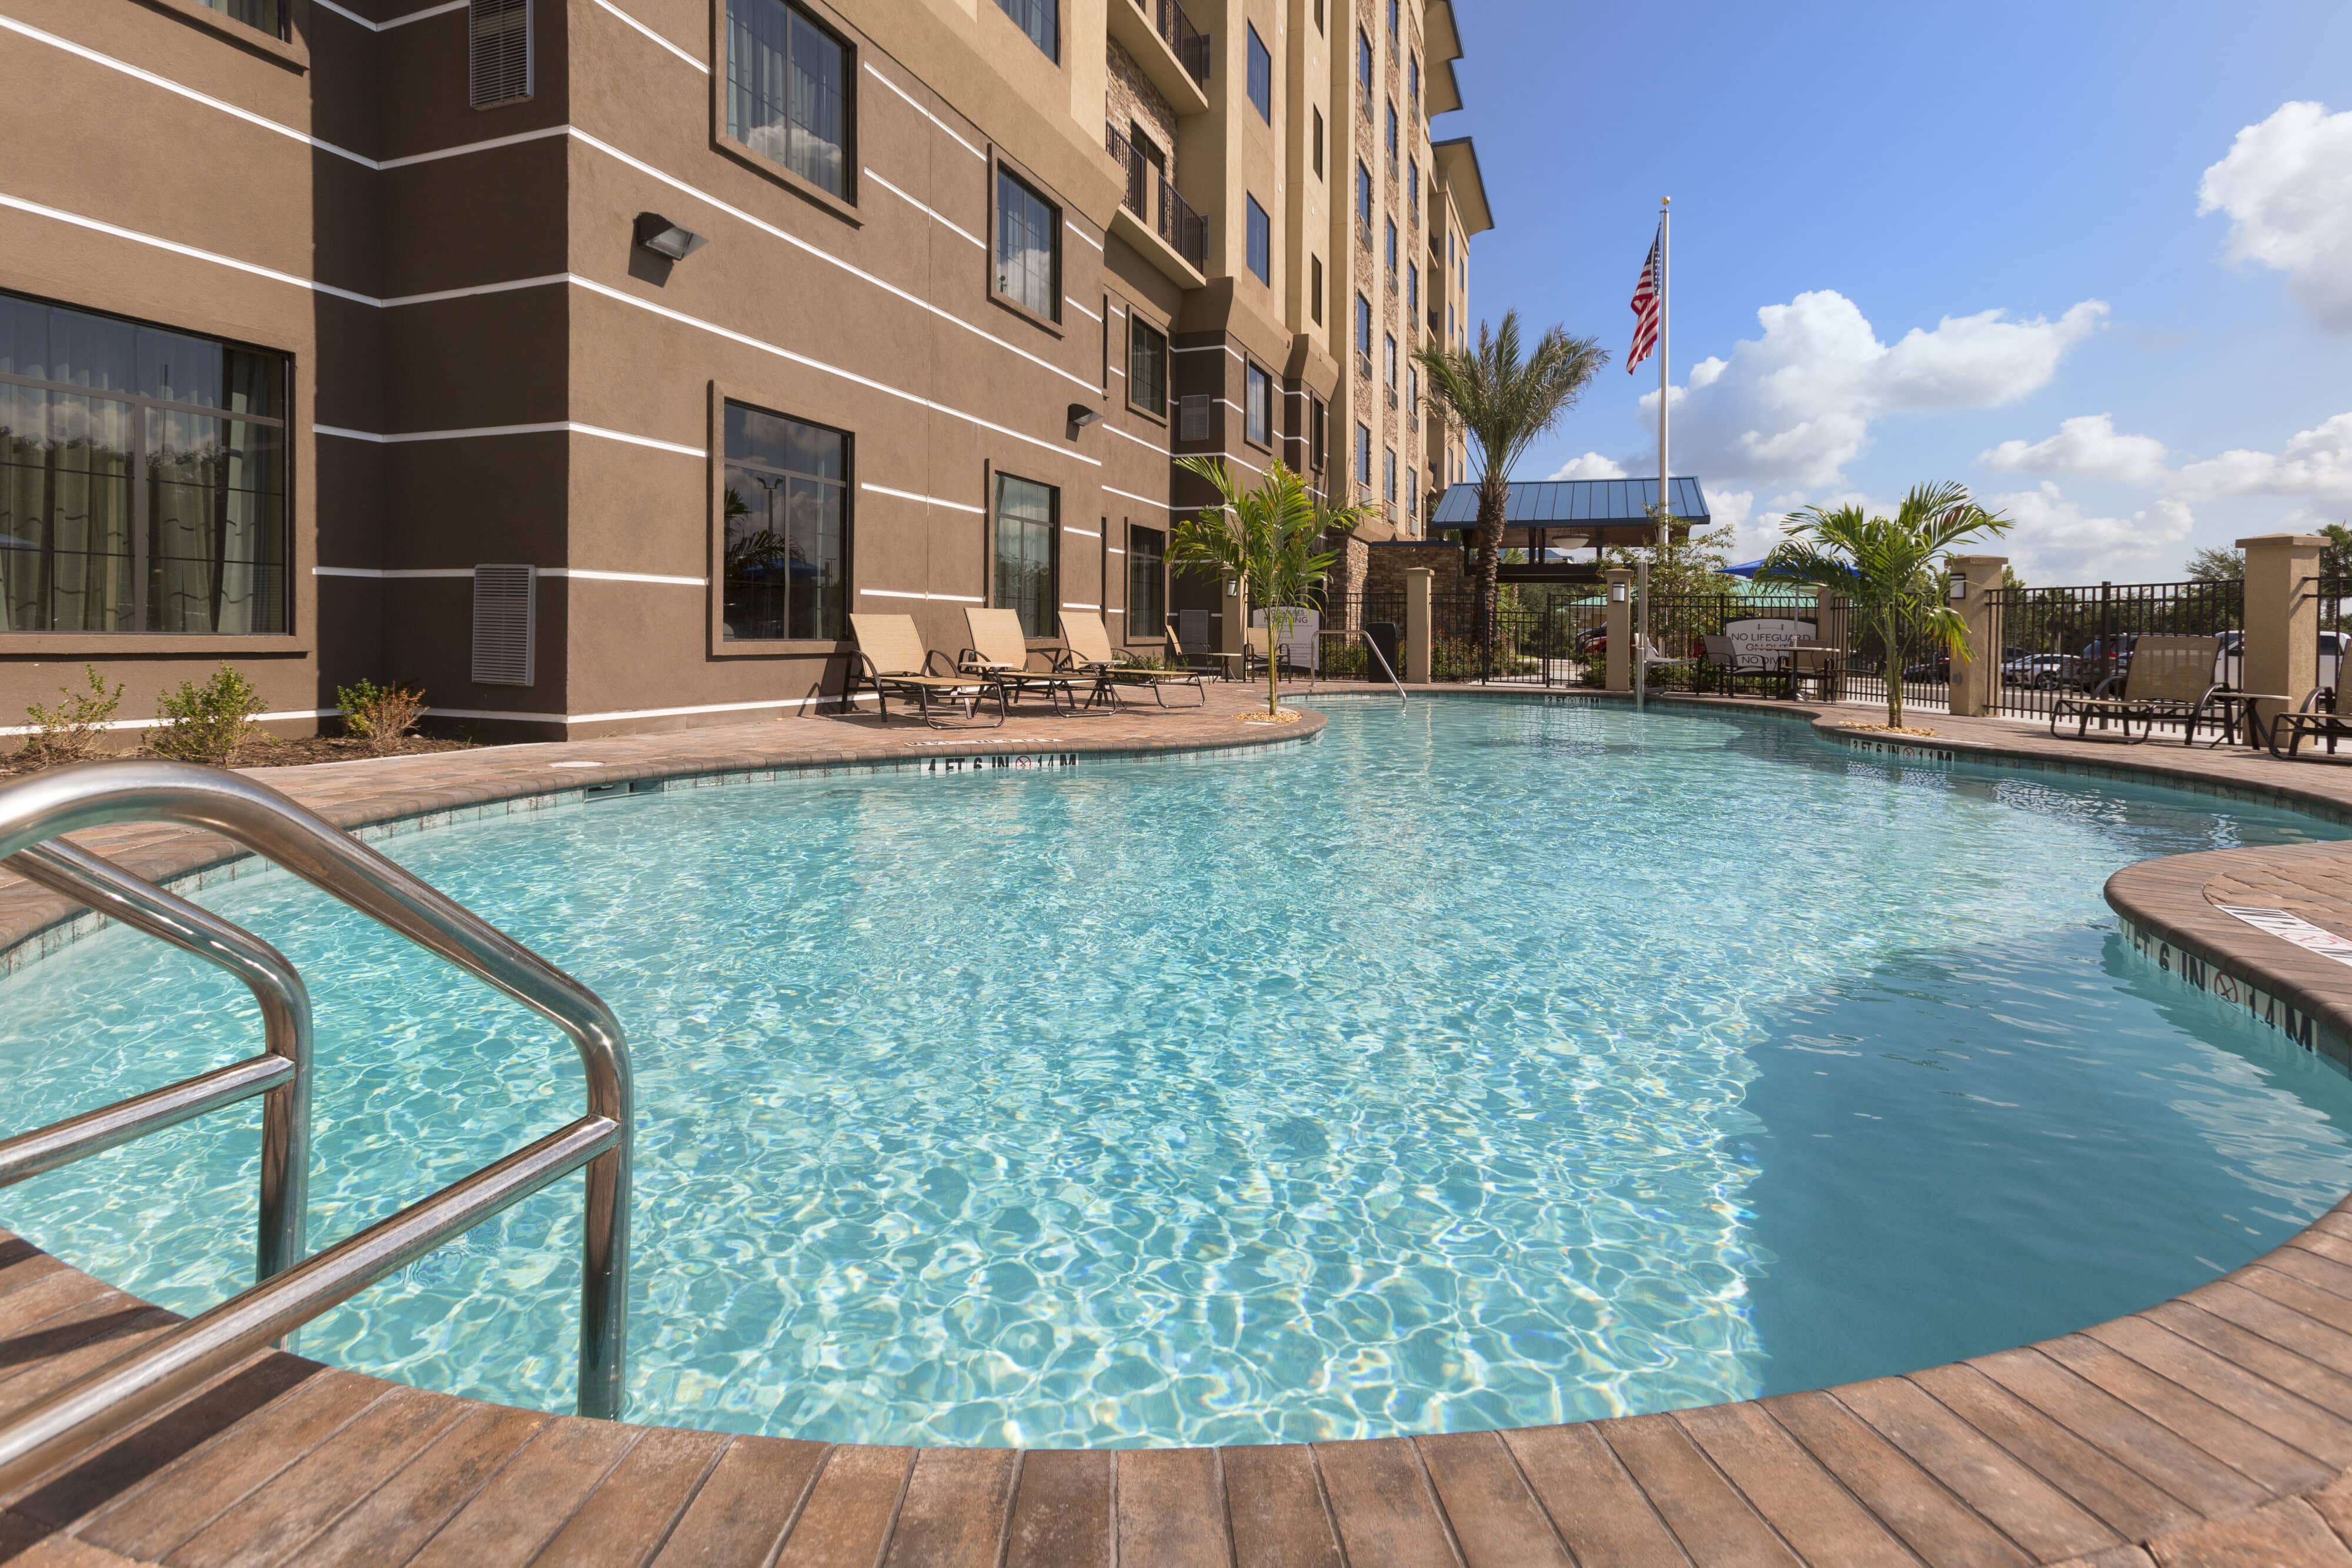 Staybridge Suites Orlando near SeaWorld pool area